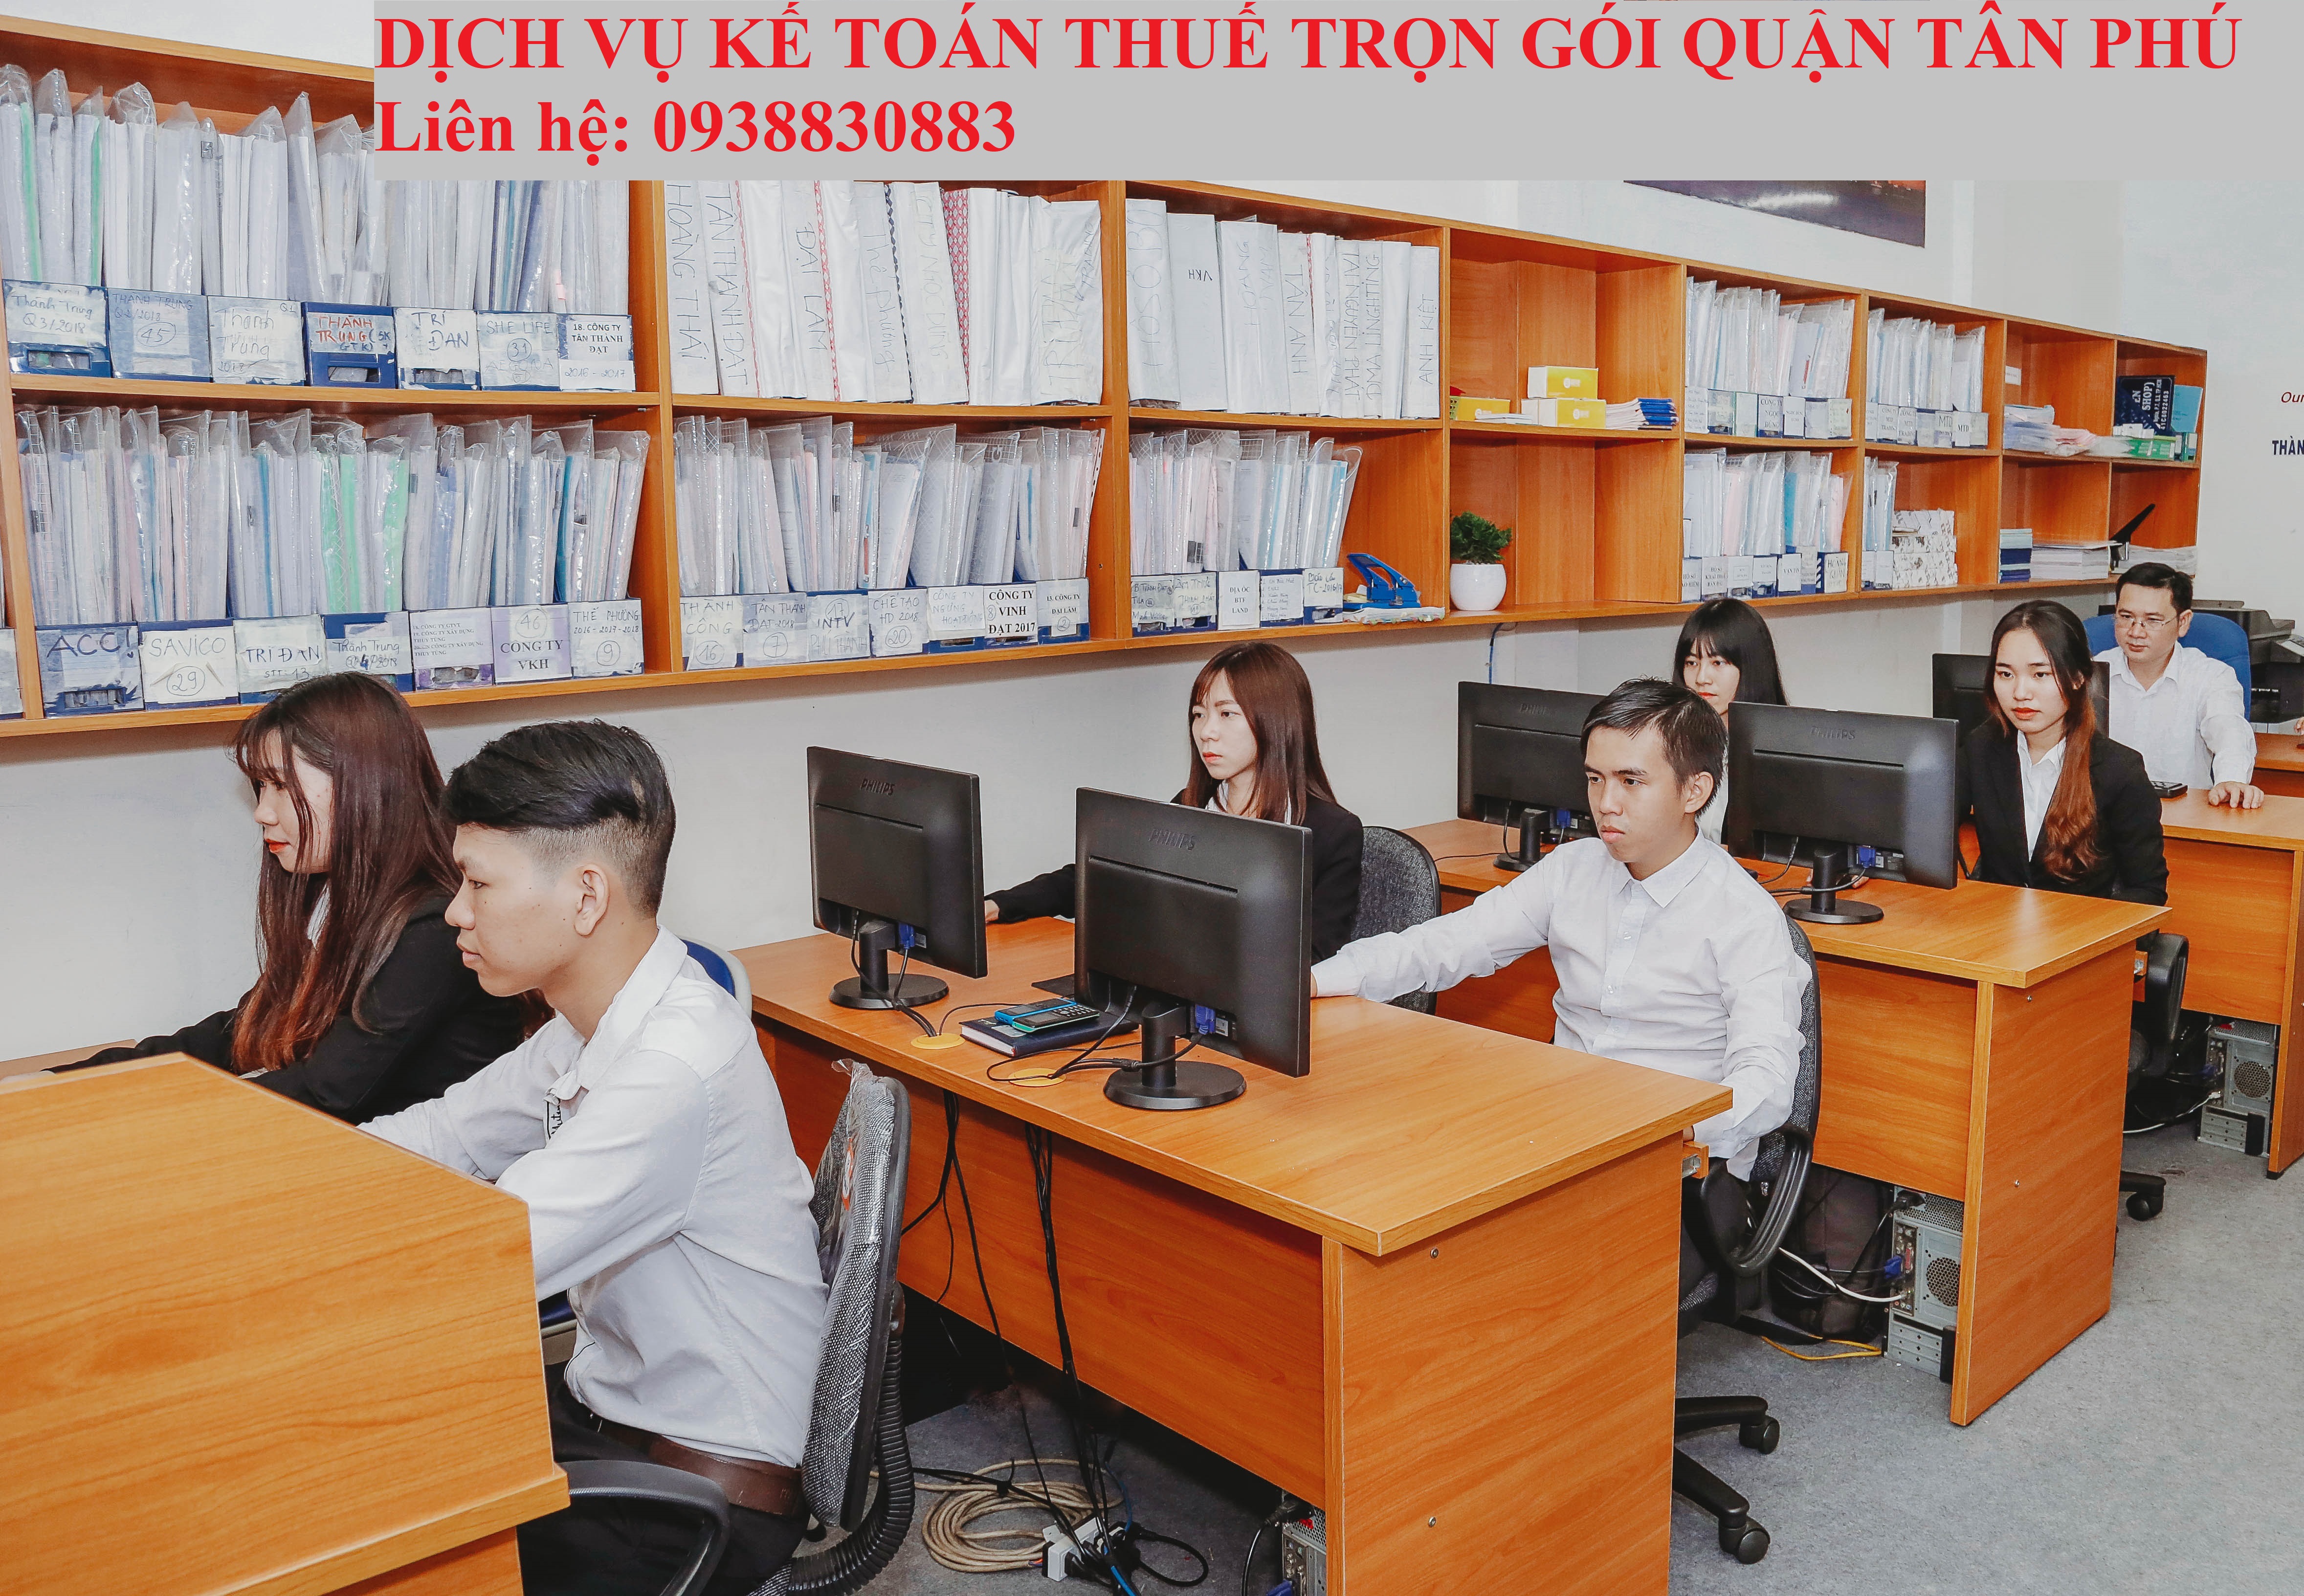 Dịch Vụ Kế Toán Thuế Quận Tân Phú